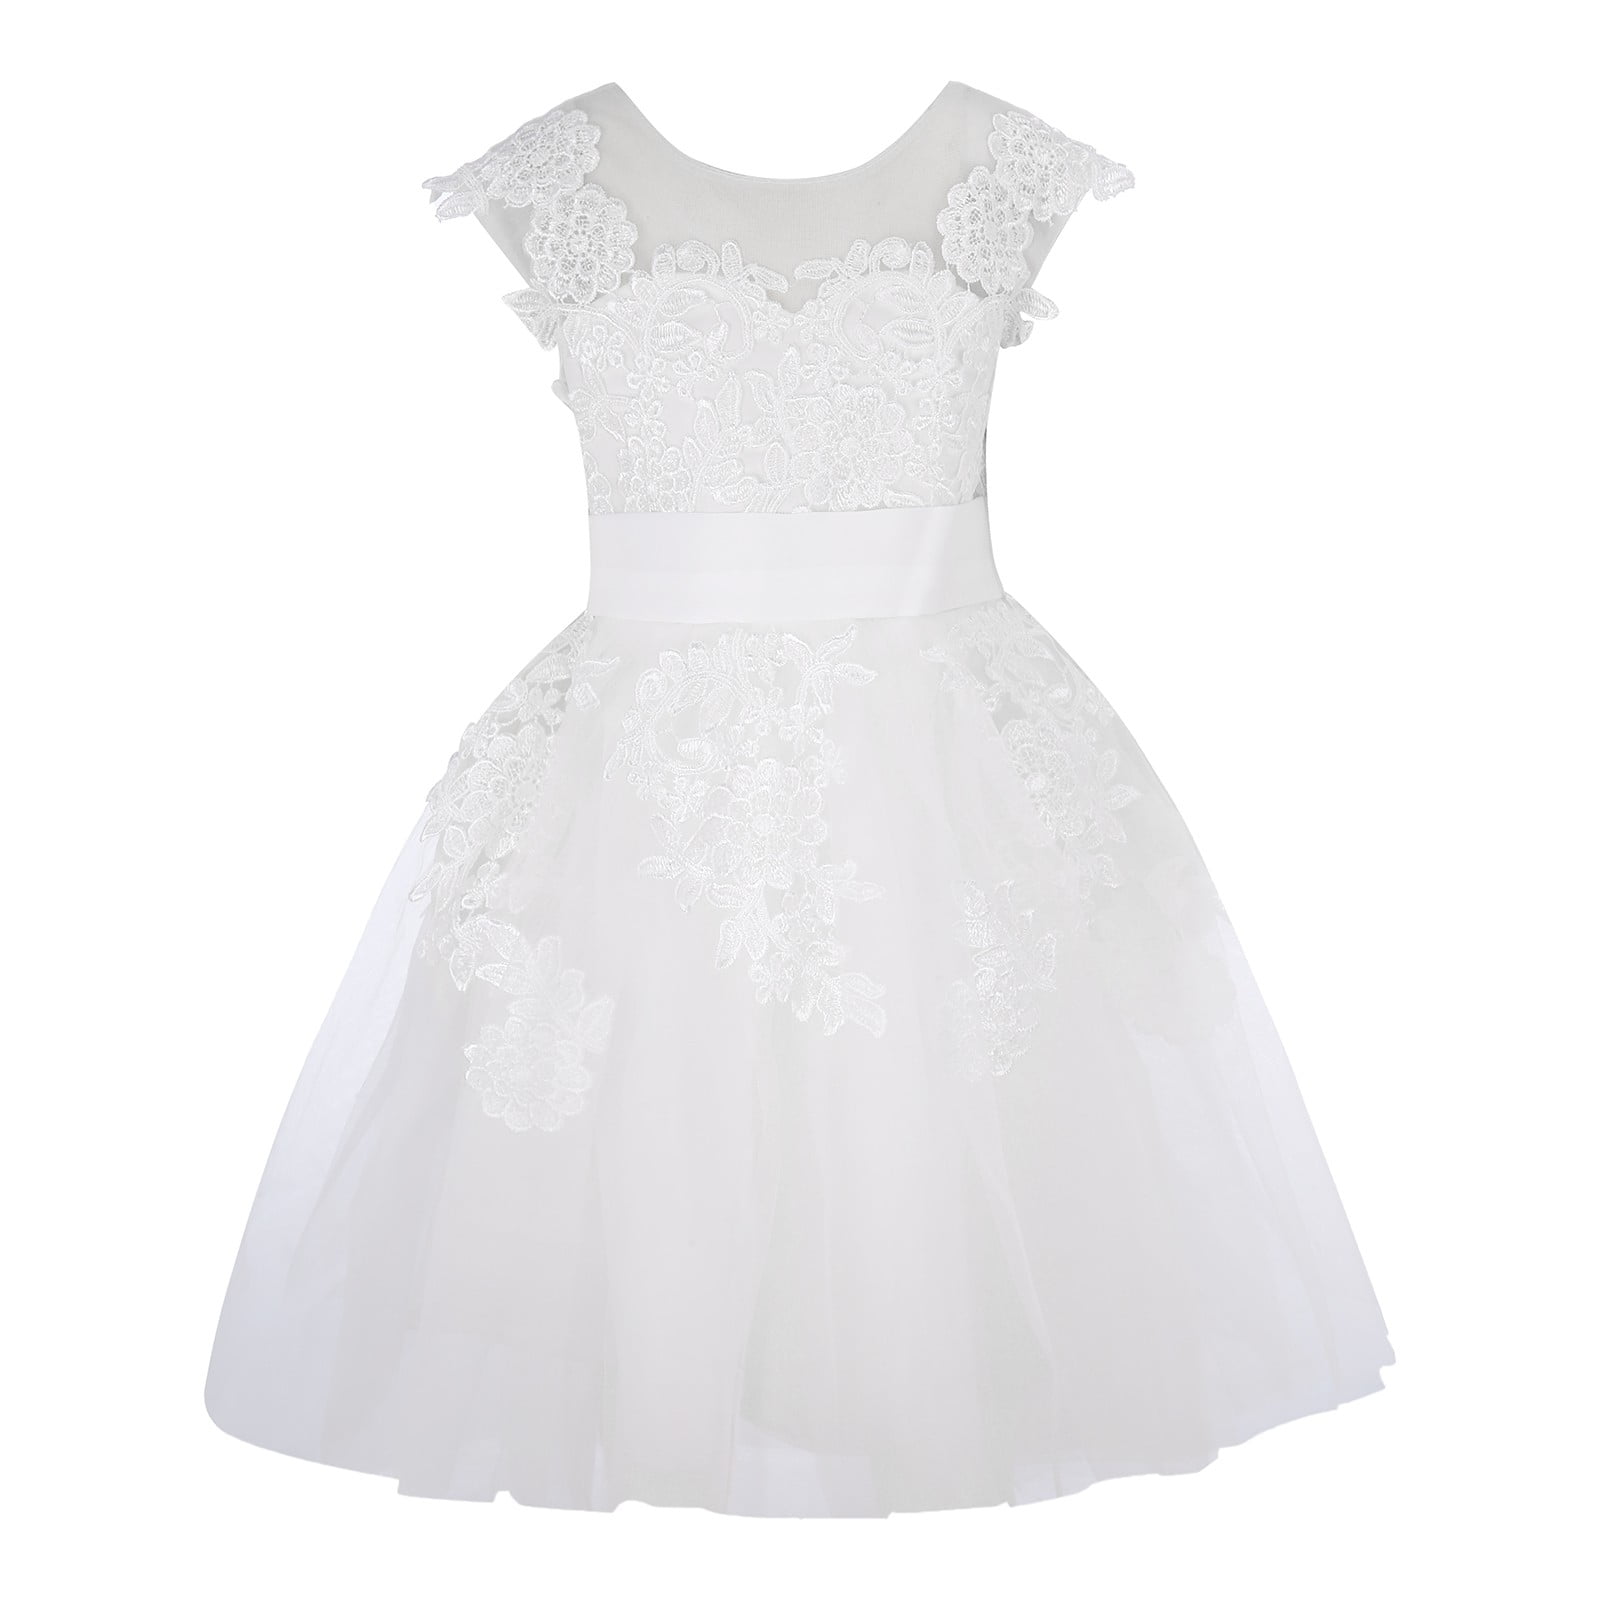 Dresses for Girls Formal Children'S Lace Tulle Wedding Flower Junior ...